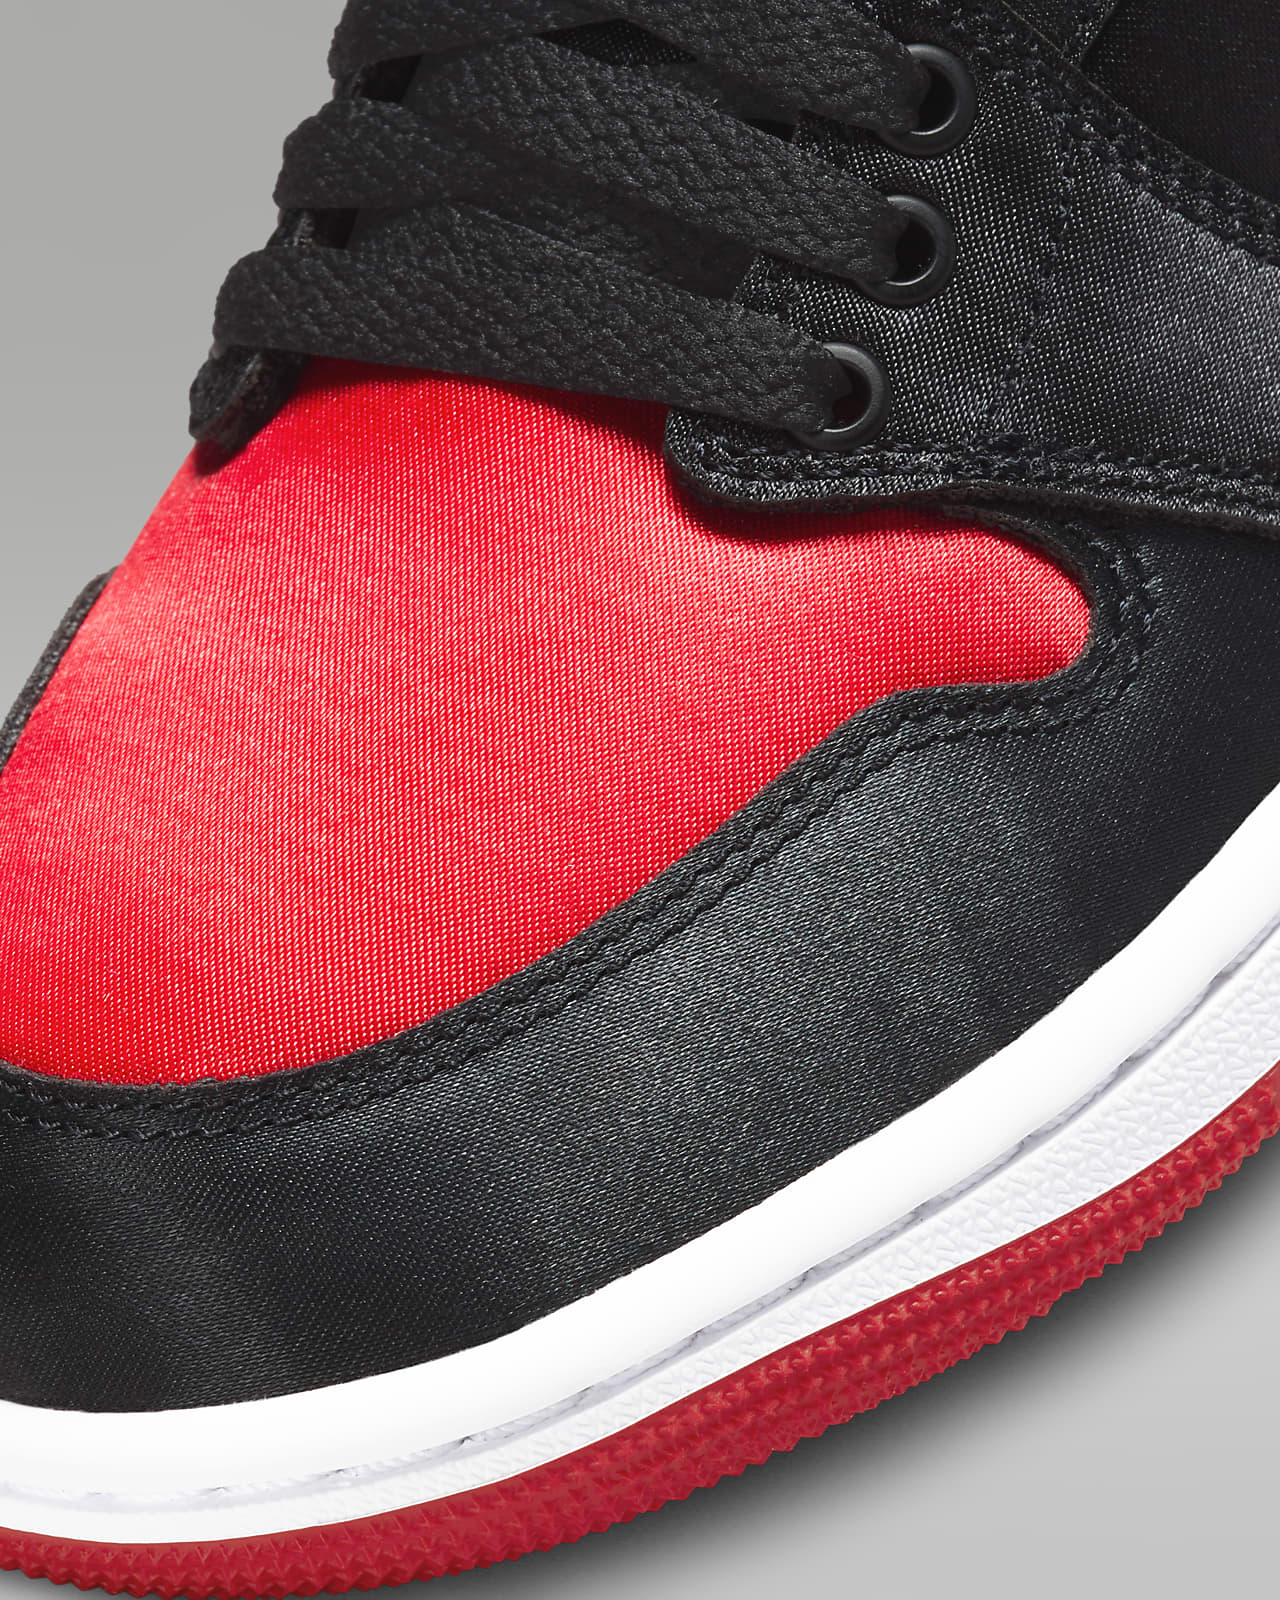 Air Jordan 1 High OG 'Satin Bred' Women's Shoes. Nike HR